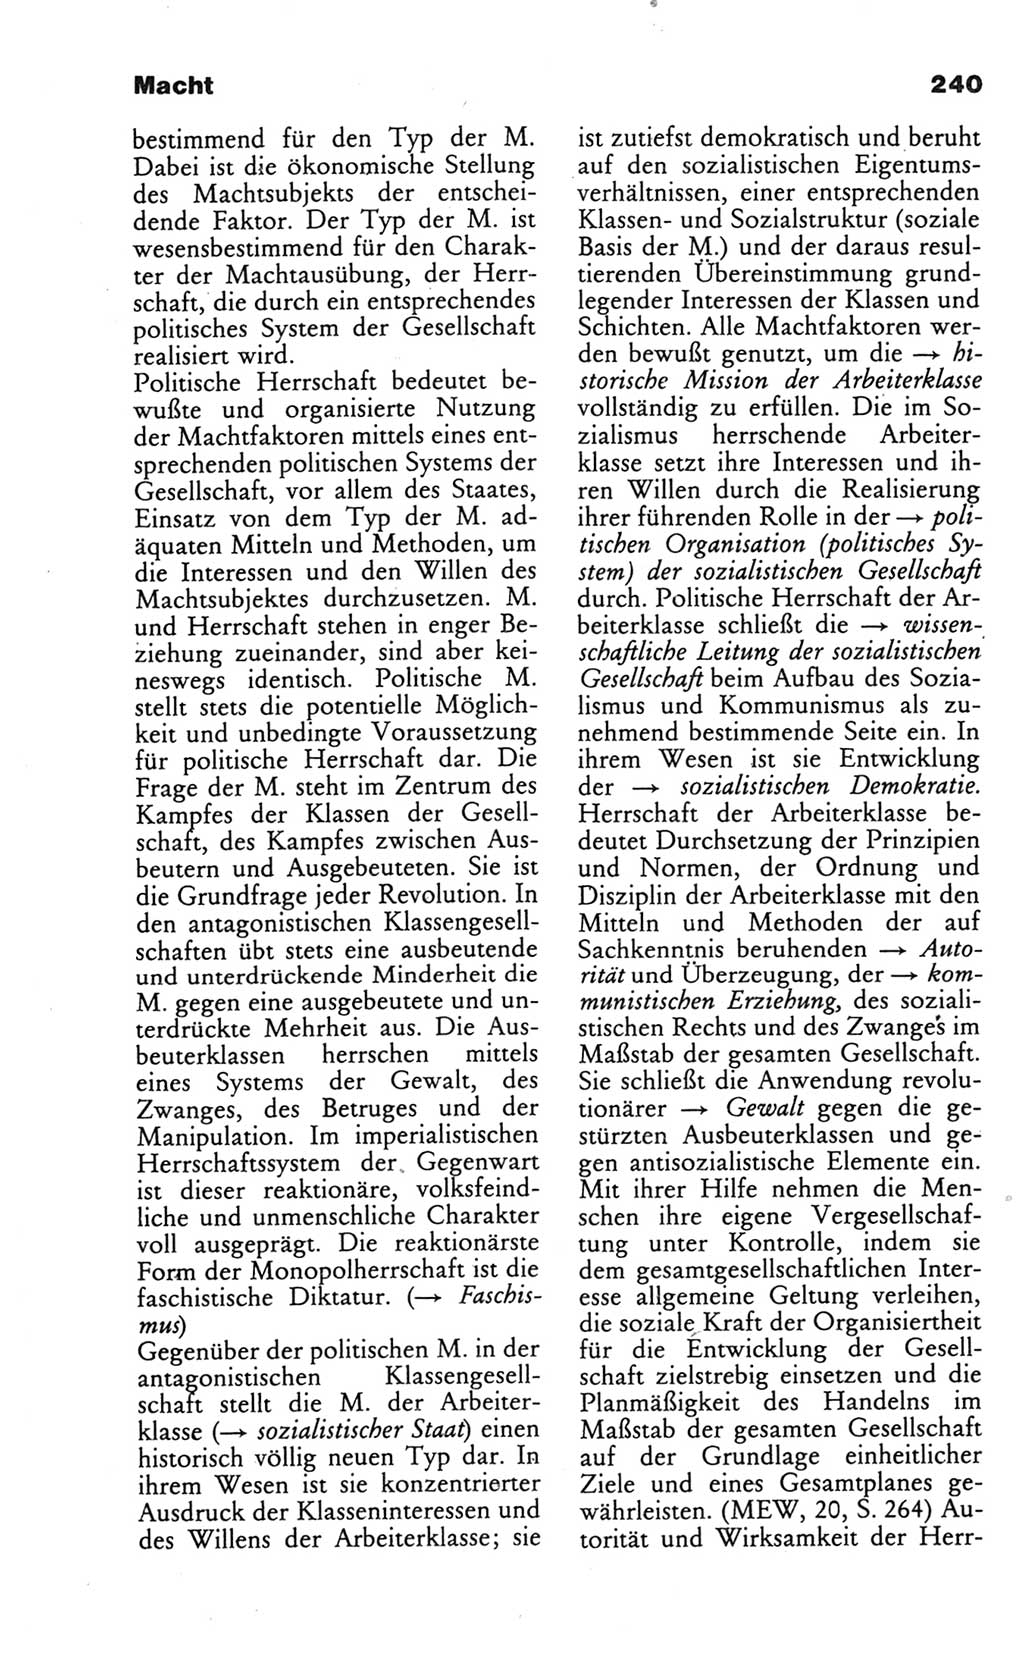 Wörterbuch des wissenschaftlichen Kommunismus [Deutsche Demokratische Republik (DDR)] 1986, Seite 240 (Wb. wiss. Komm. DDR 1986, S. 240)